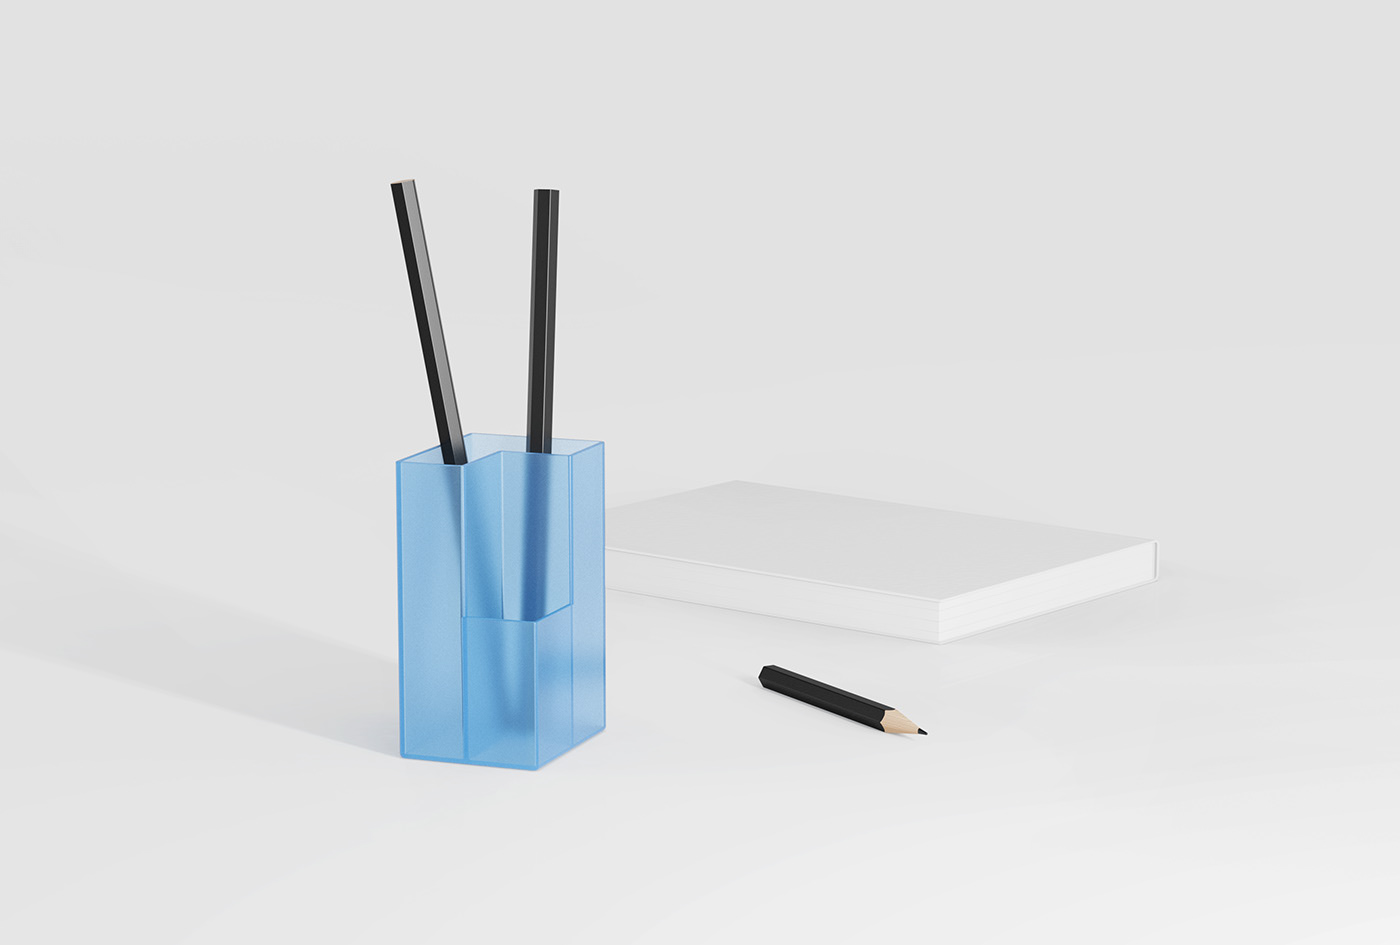 pen container 0-1 design 零到一设计 Creative Design product design  industrial design 